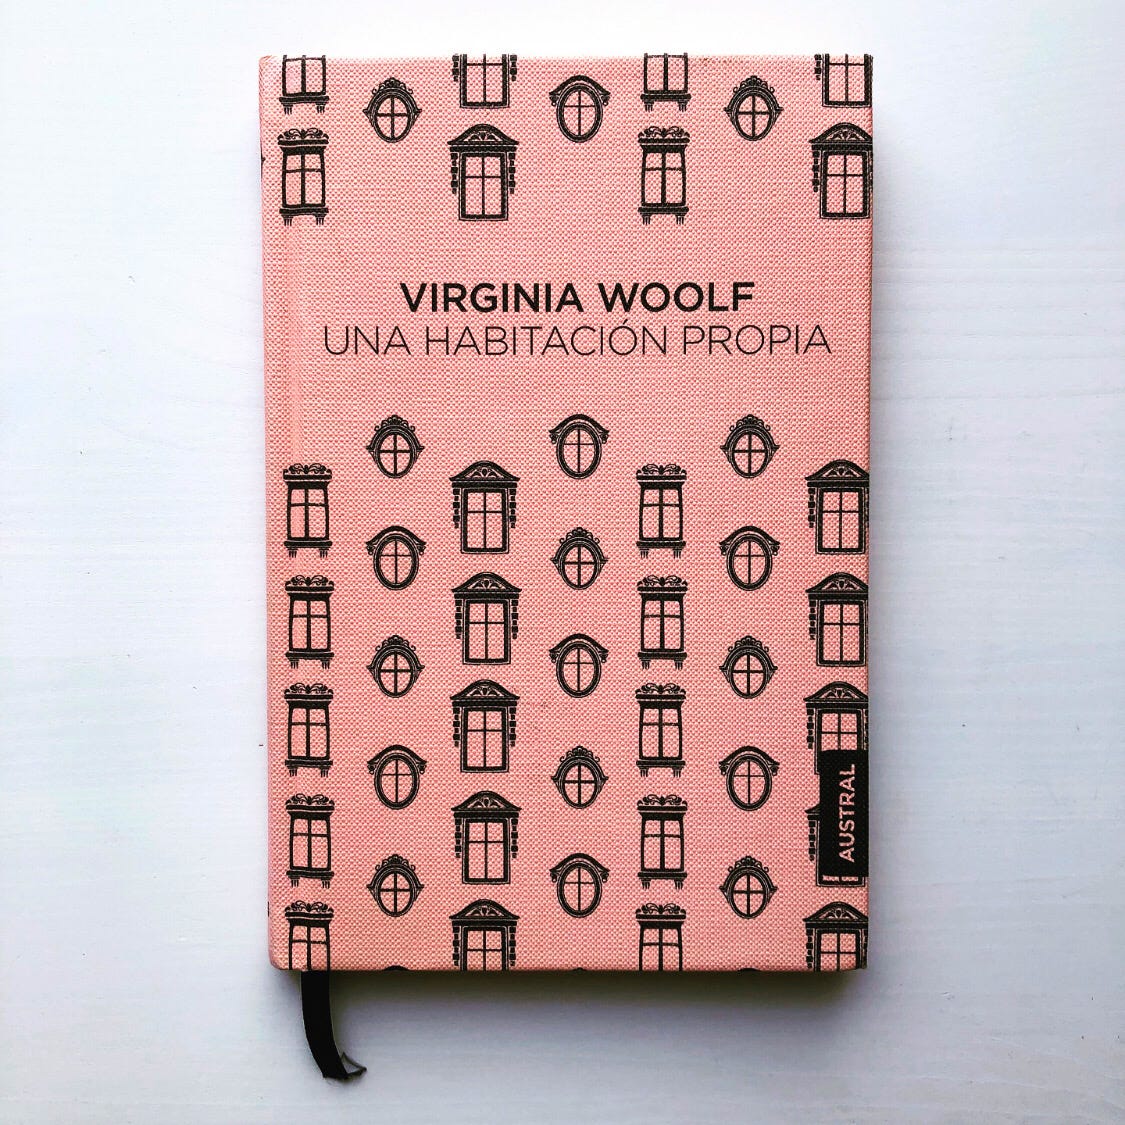 Reseña de Una habitación propia de Virginia Woolf | Leer es vivir dos veces